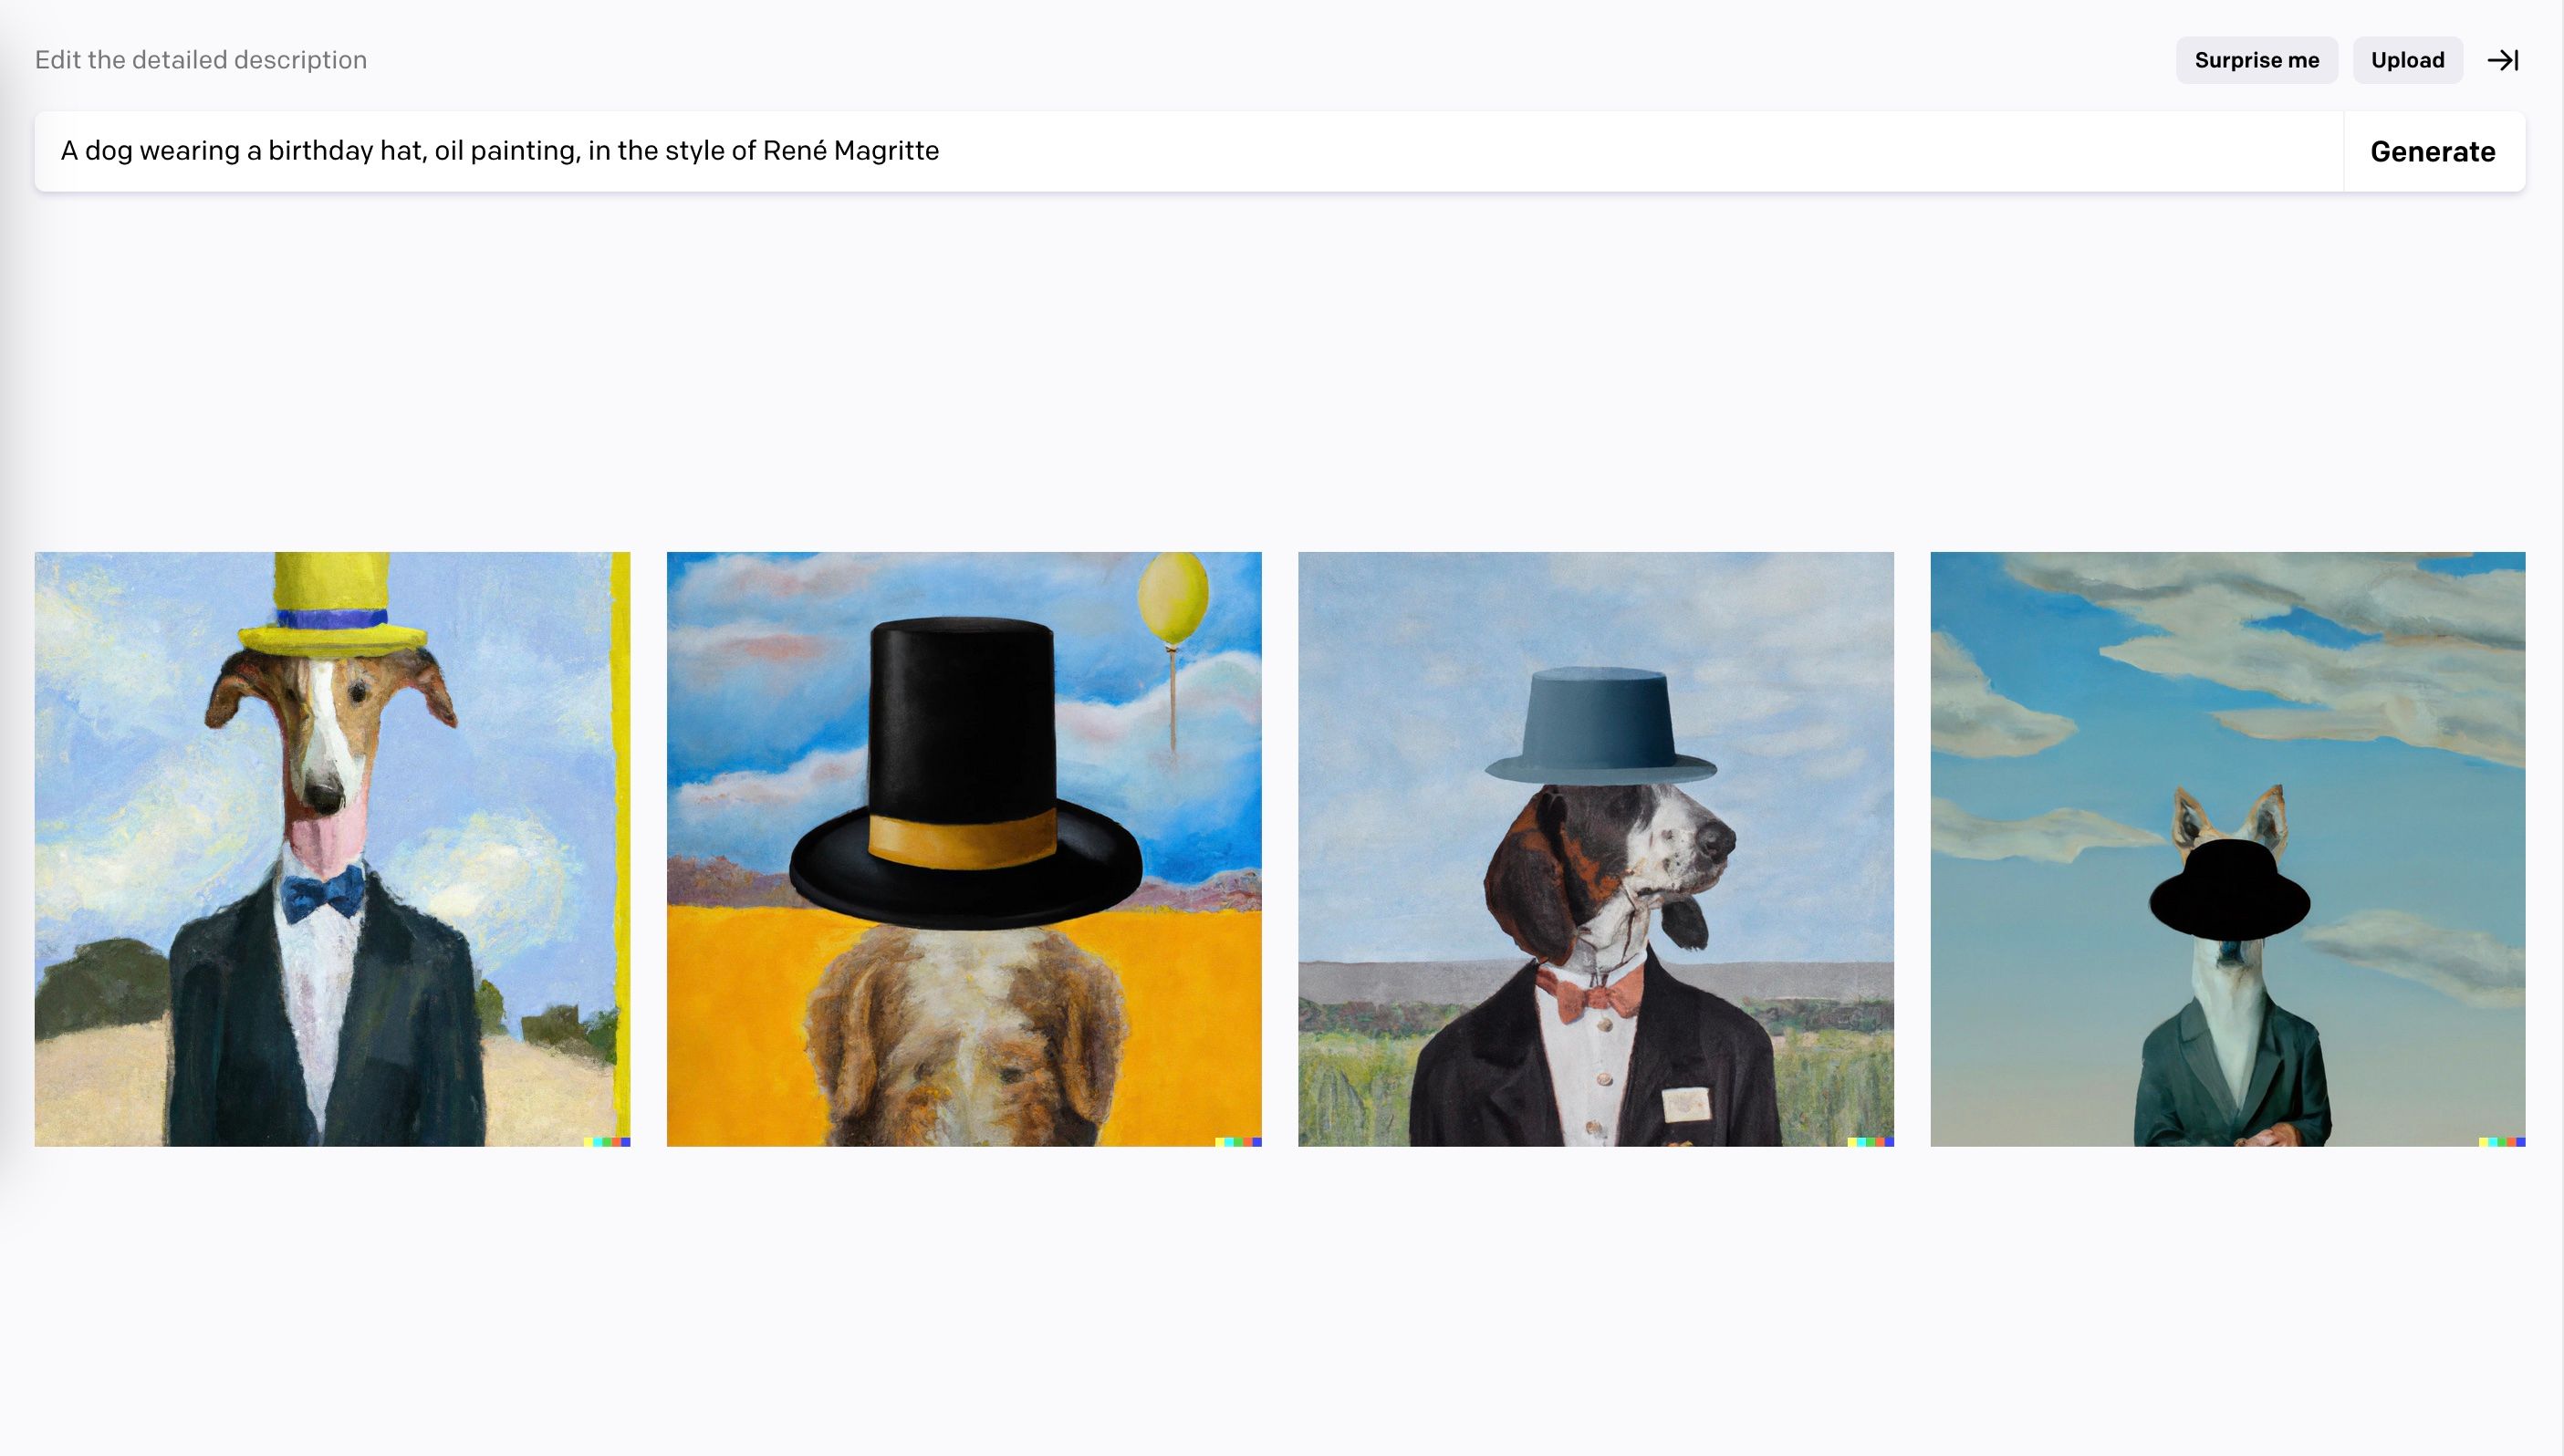 Quatre images d'un chien coiffé d'un chapeau à la manière d'Henri Magritte, générées avec DALL-E